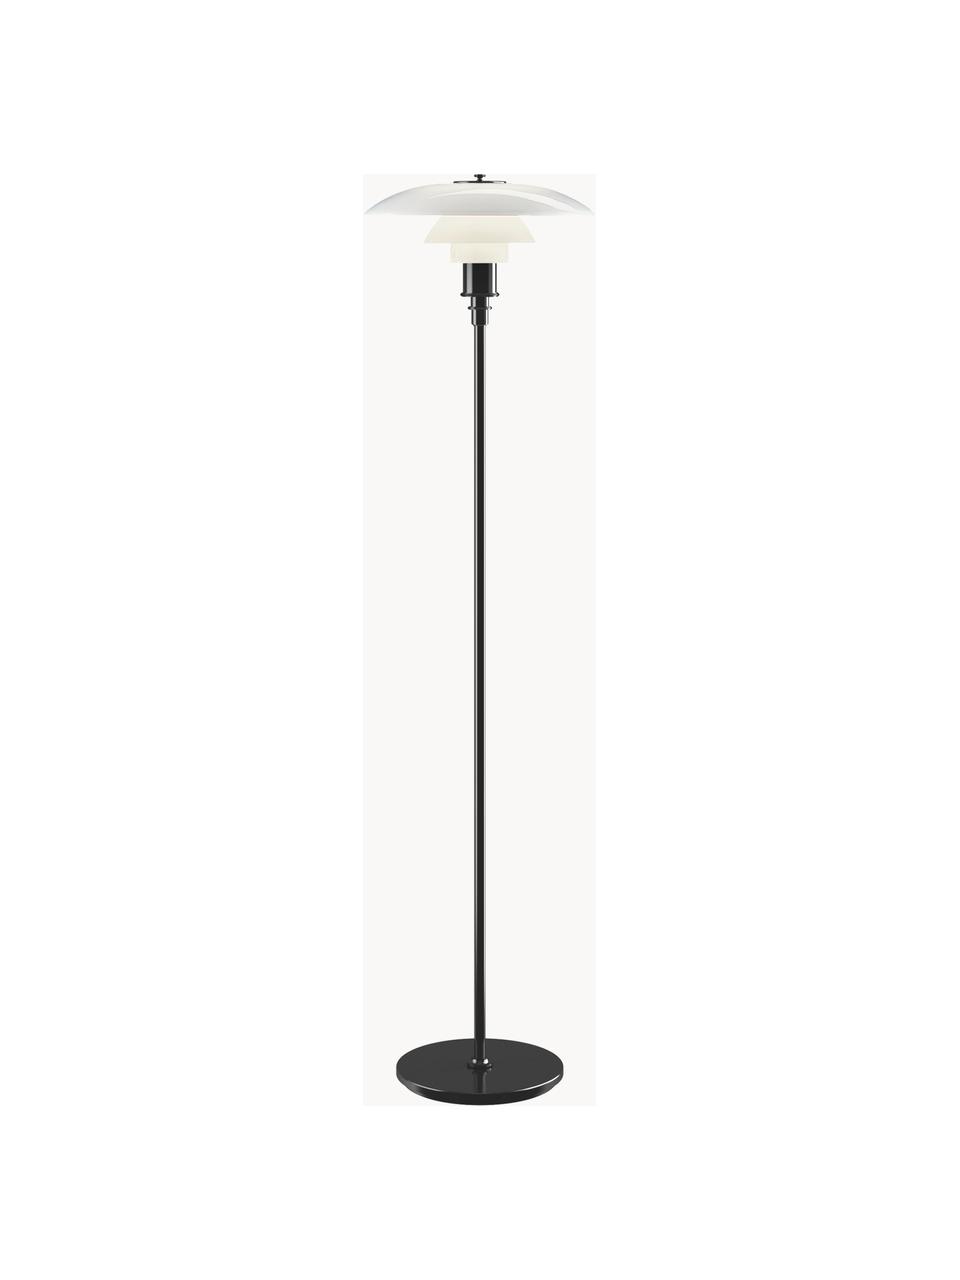 Kleine vloerlamp PH 3½-2½, mondgeblazen, Lampenkap: opaalglas, mondgeblazen, Lampvoet: messing, gemetalliseerd, Zwart, wit, H 130 cm